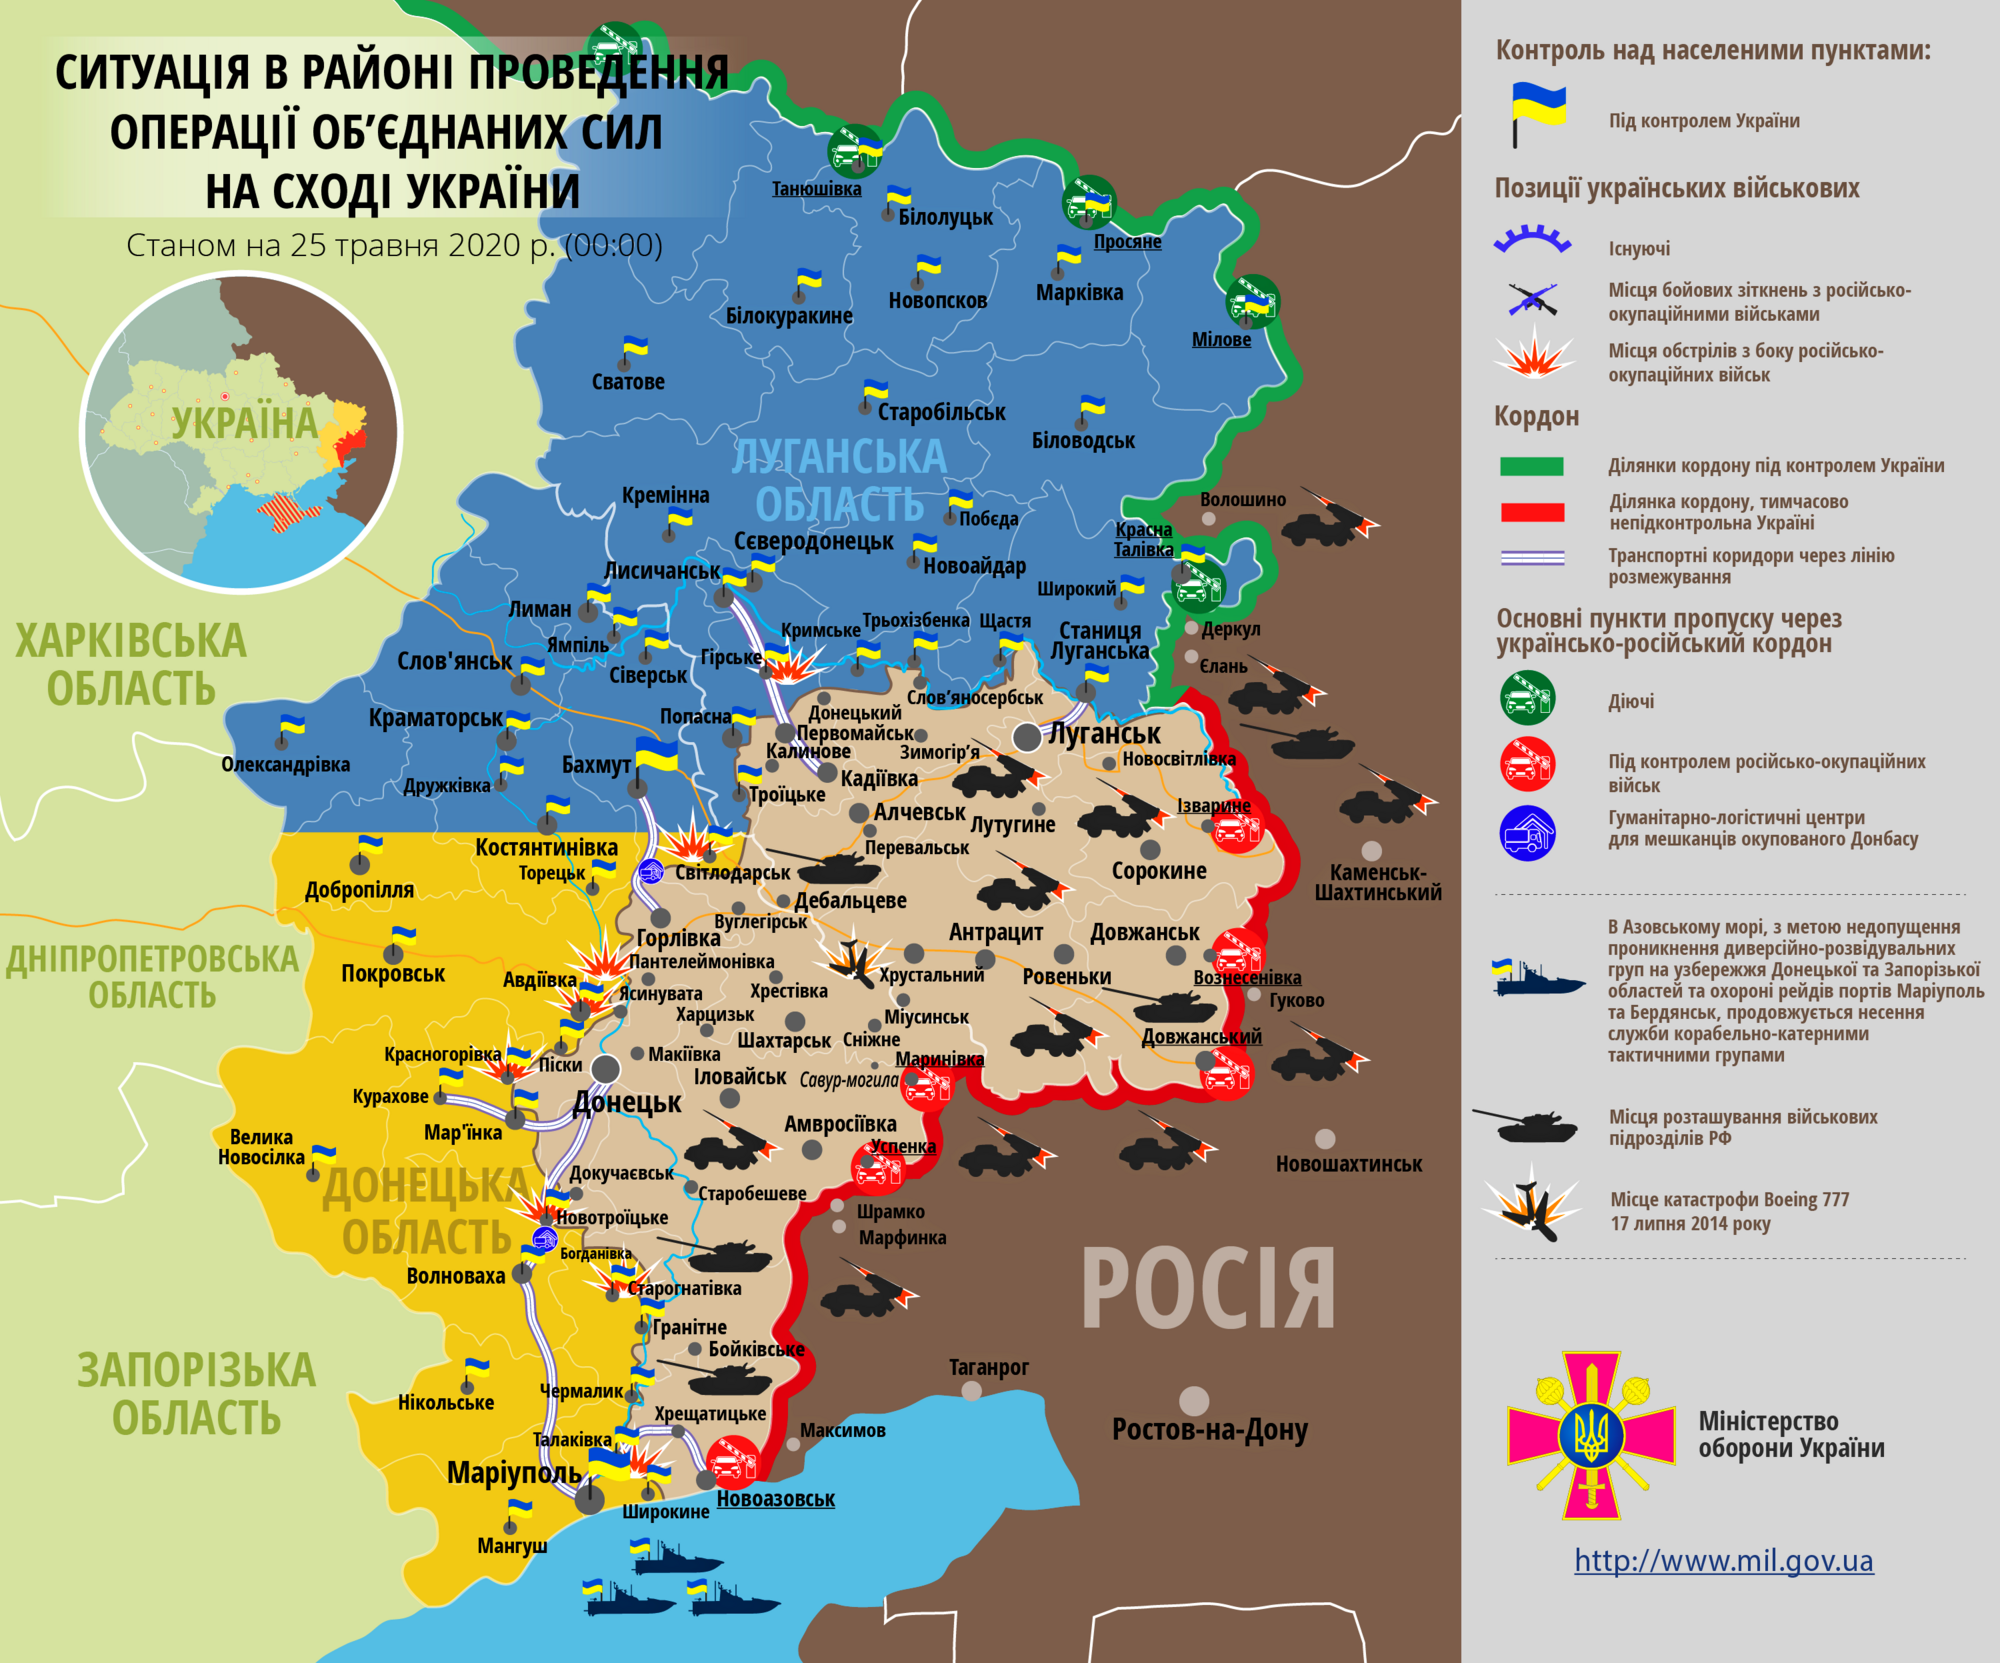 Ситуация в зоне проведения ООС на Донбассе 25 мая